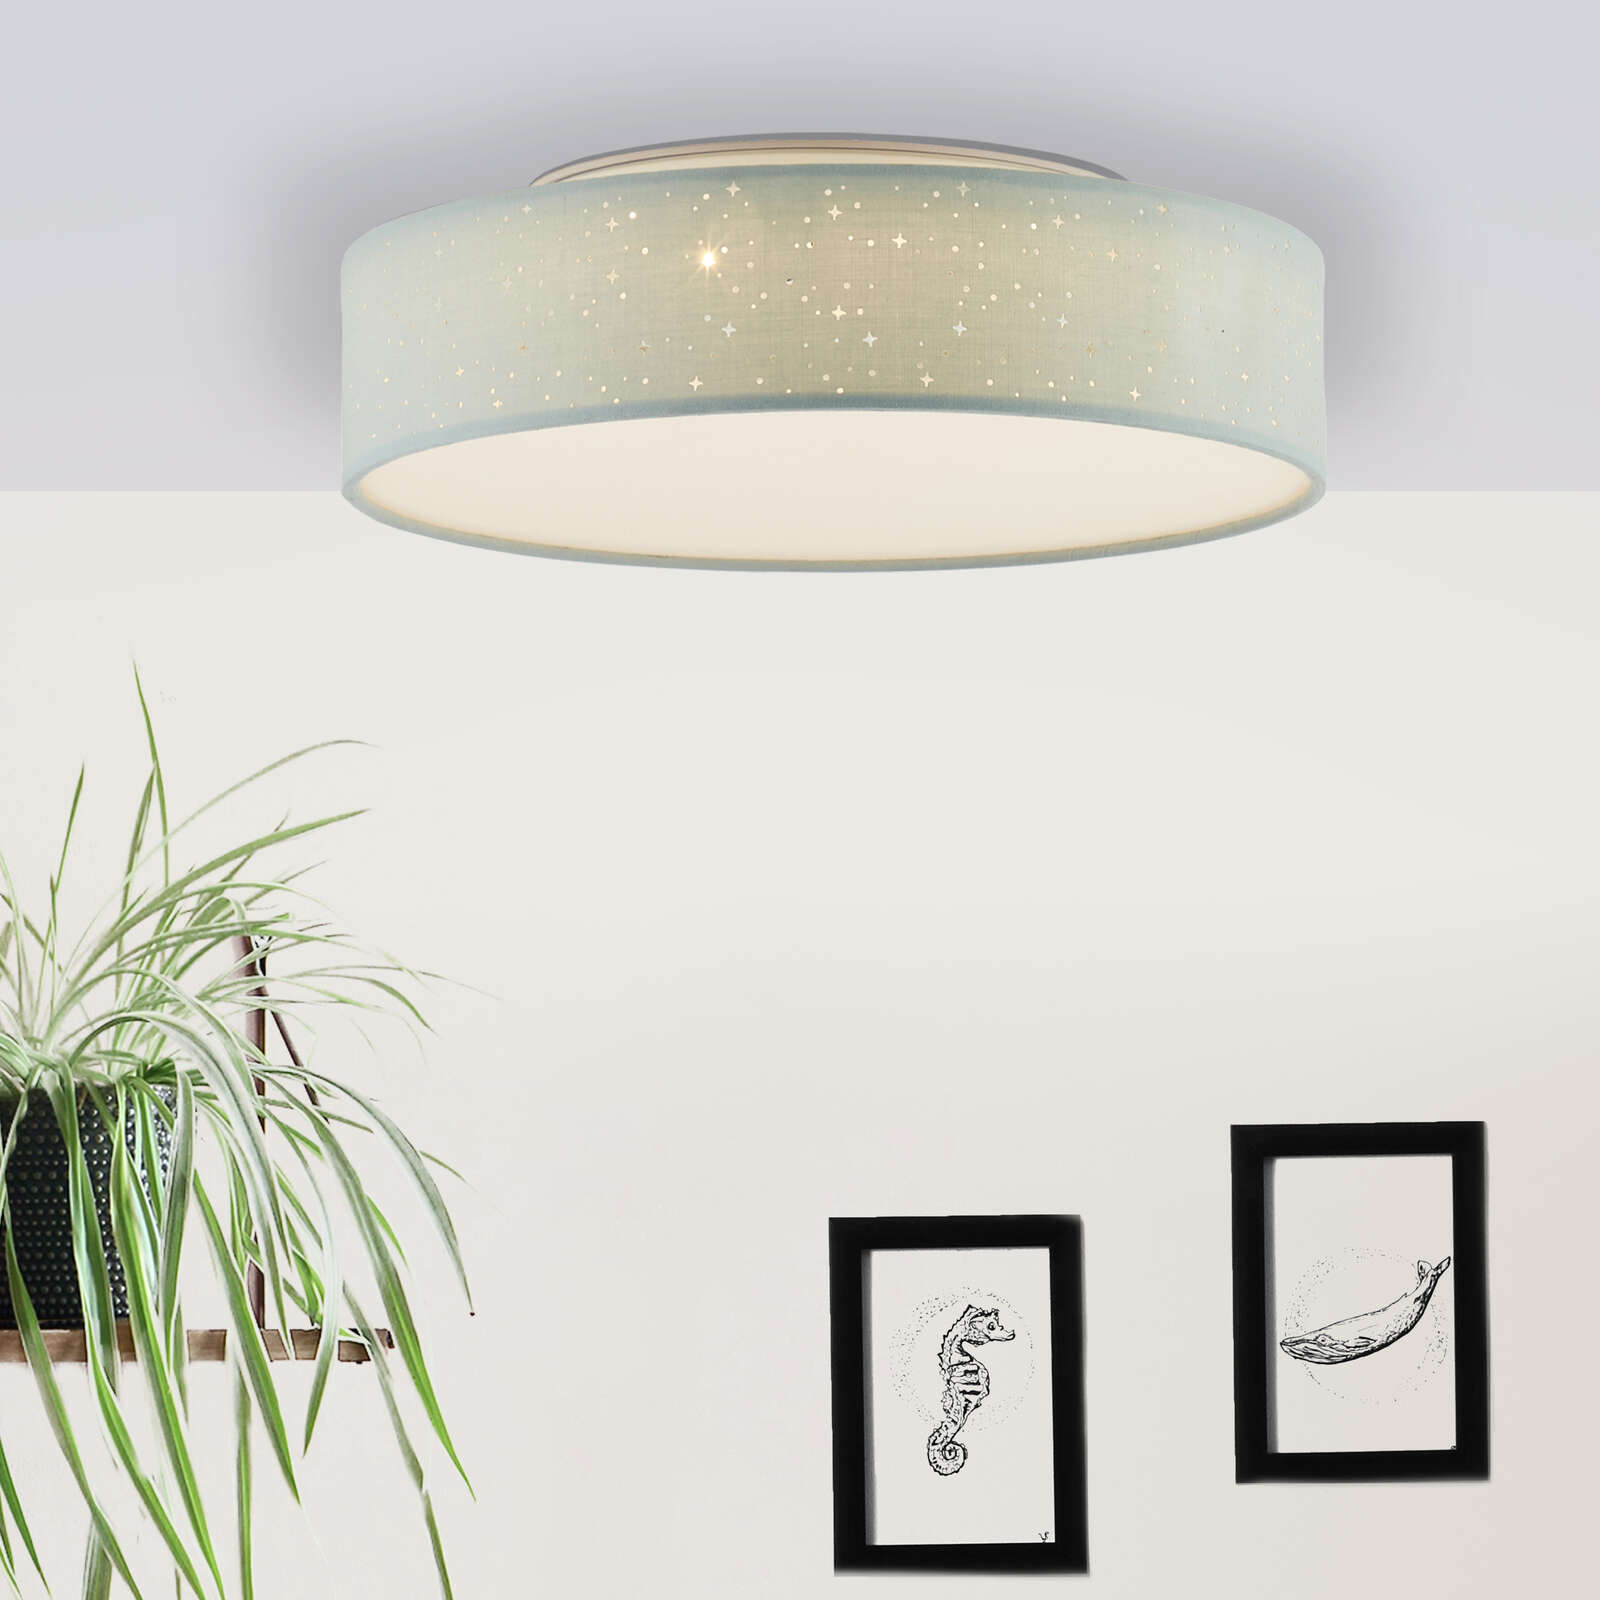             Textile ceiling light - Ava 2 - Green
        